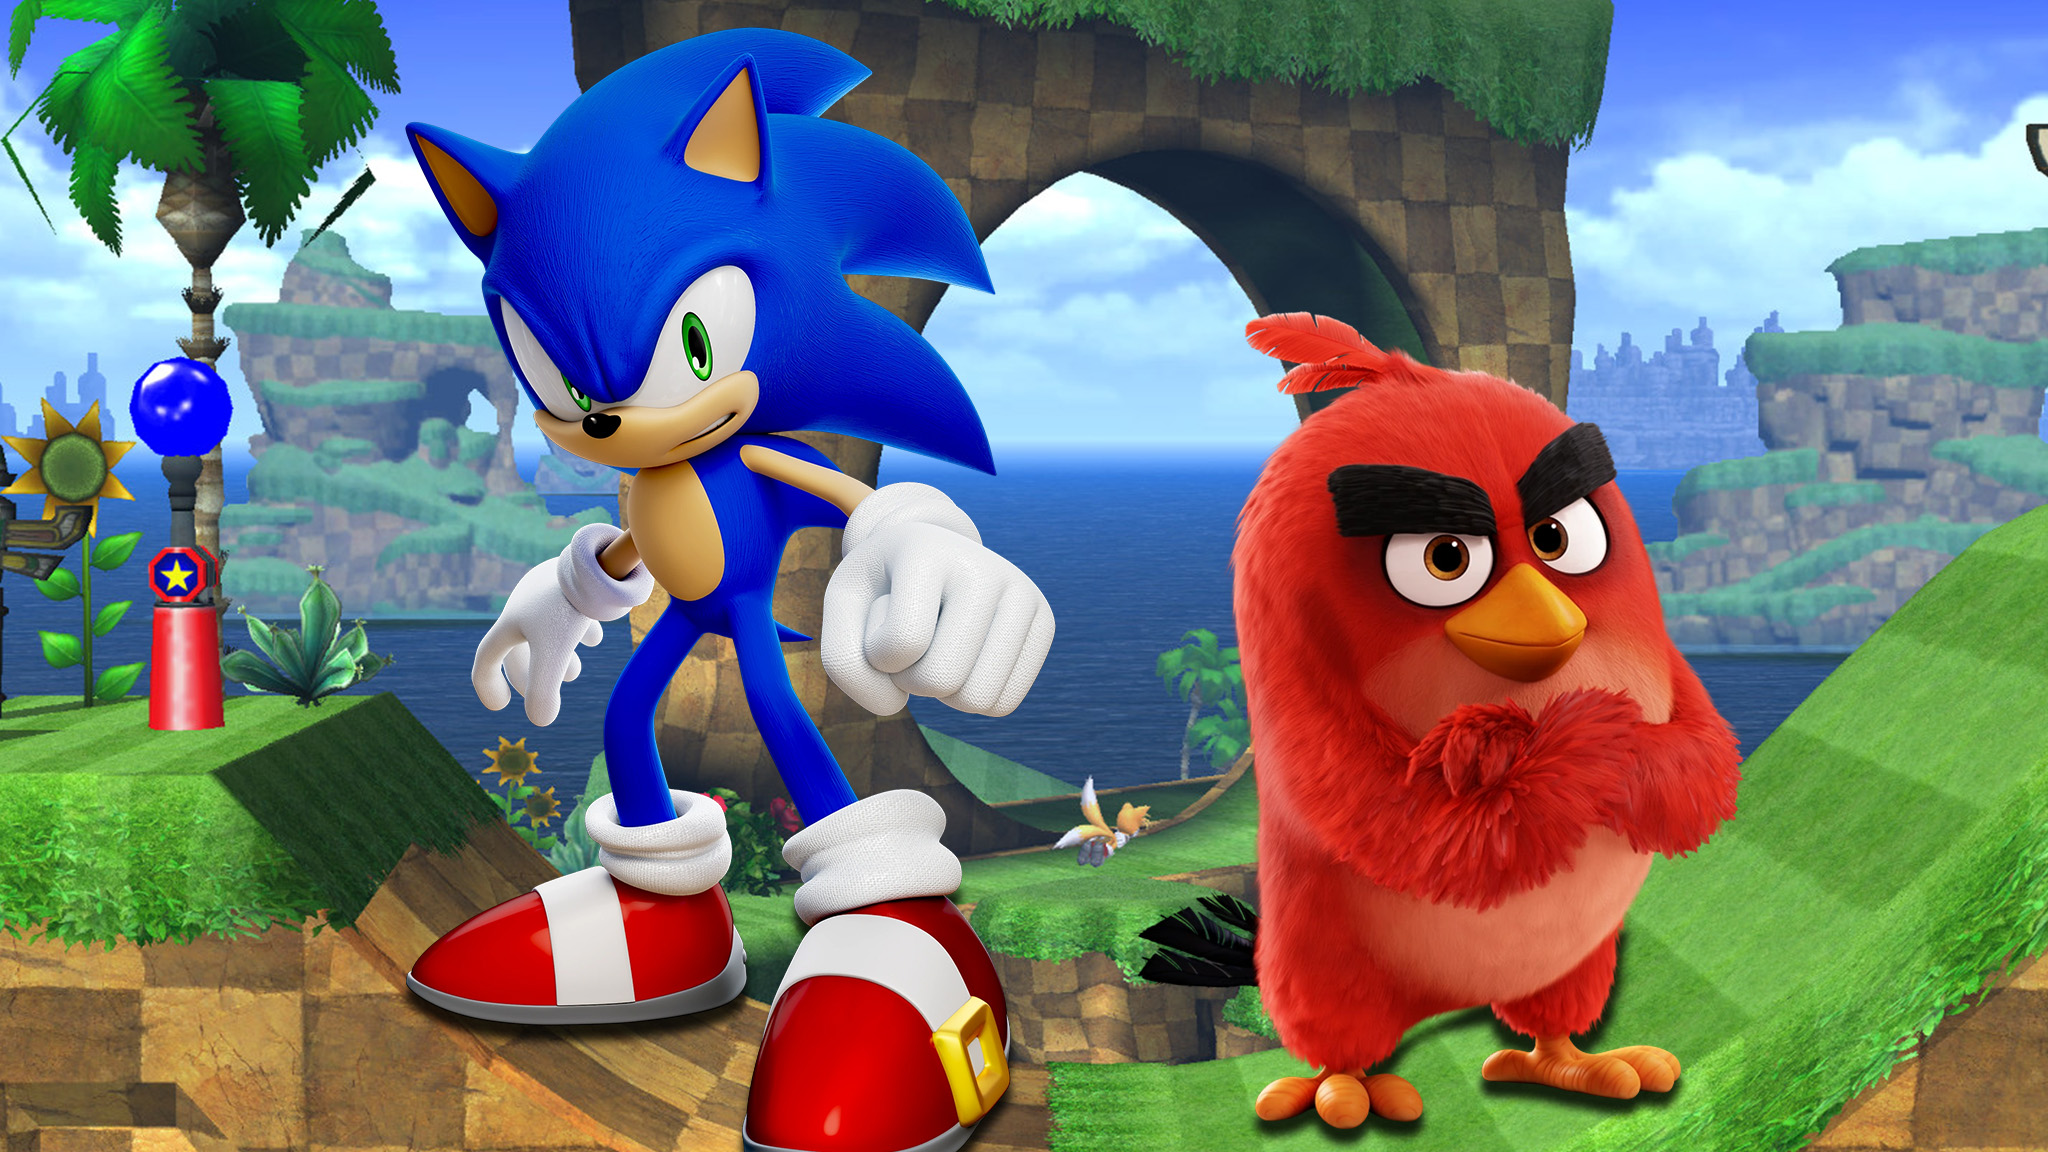 Criadora do Sonic, gigante dos games Sega quer comprar dona do Angry Birds  por até R$ 3,8 bilhões - Seu Dinheiro